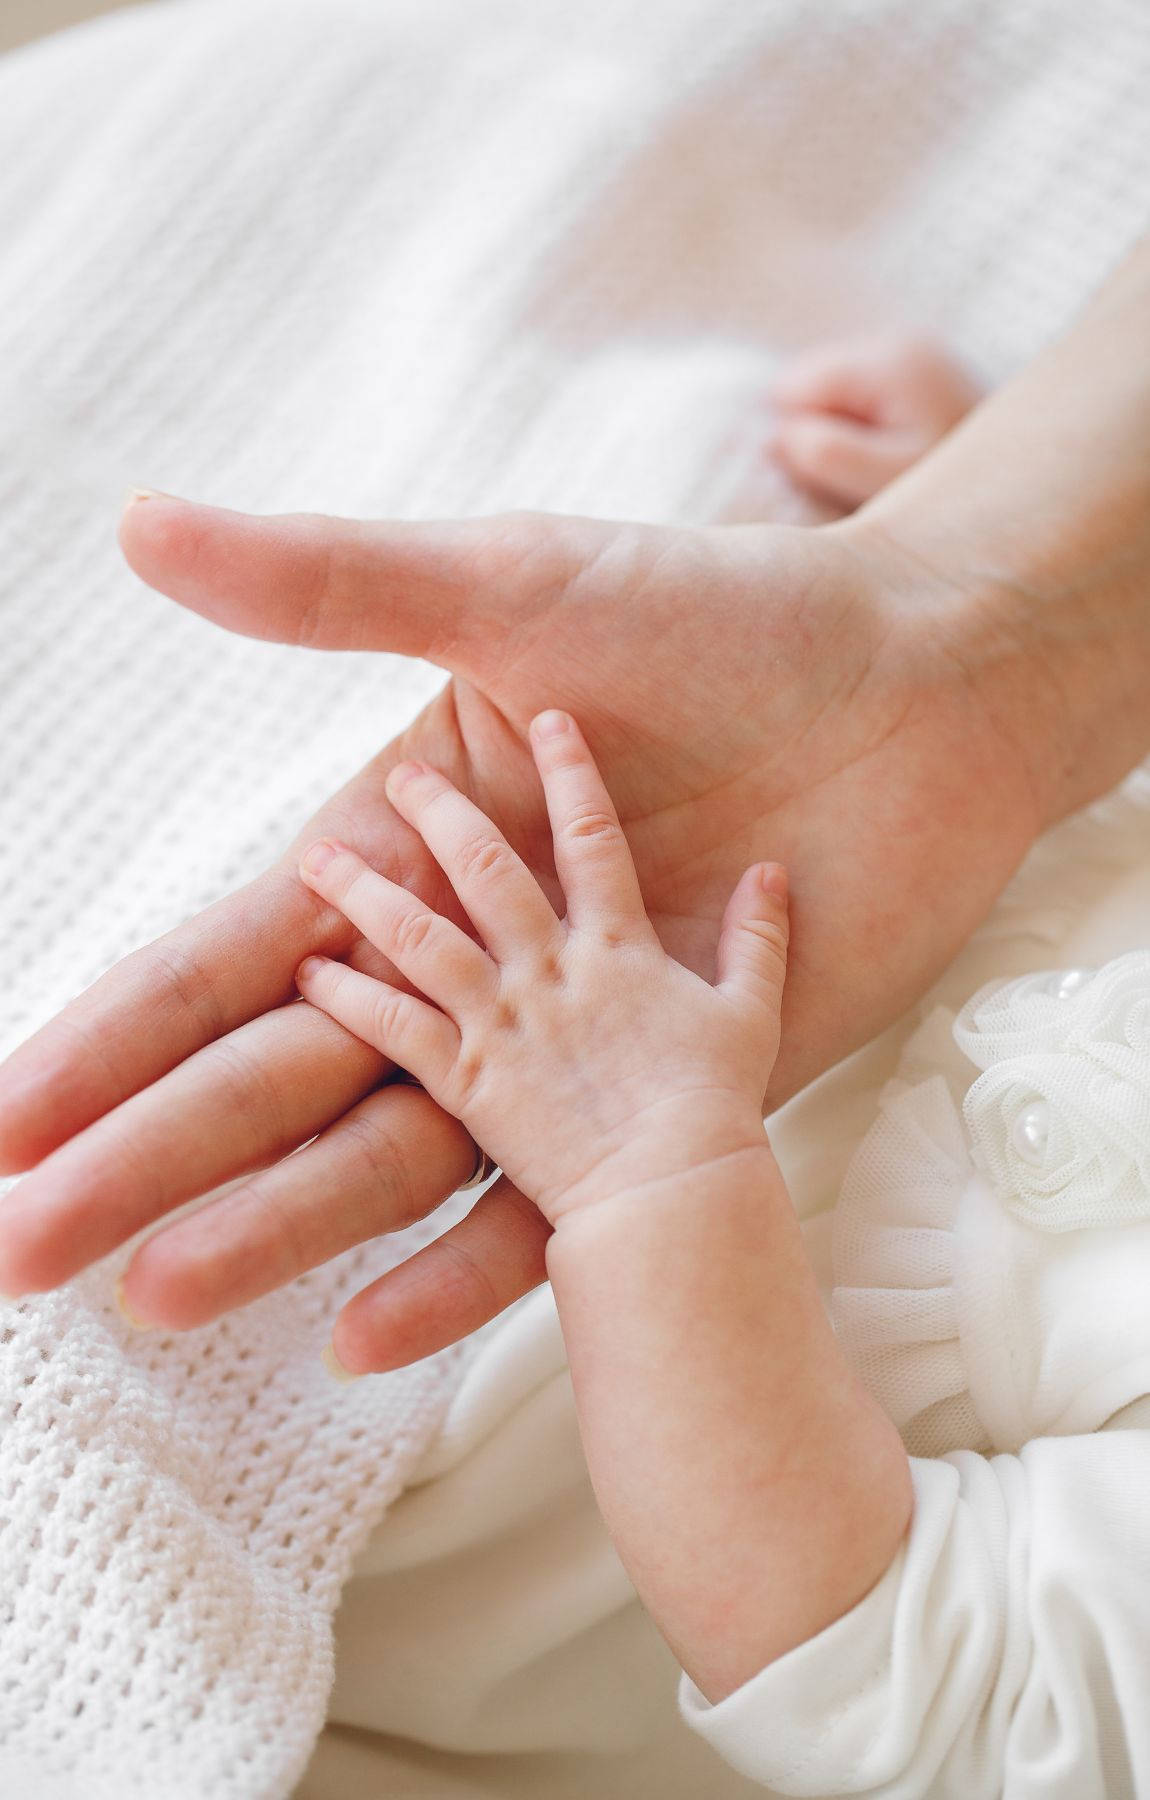 Babyhandruht Auf Einer Hand Wallpaper